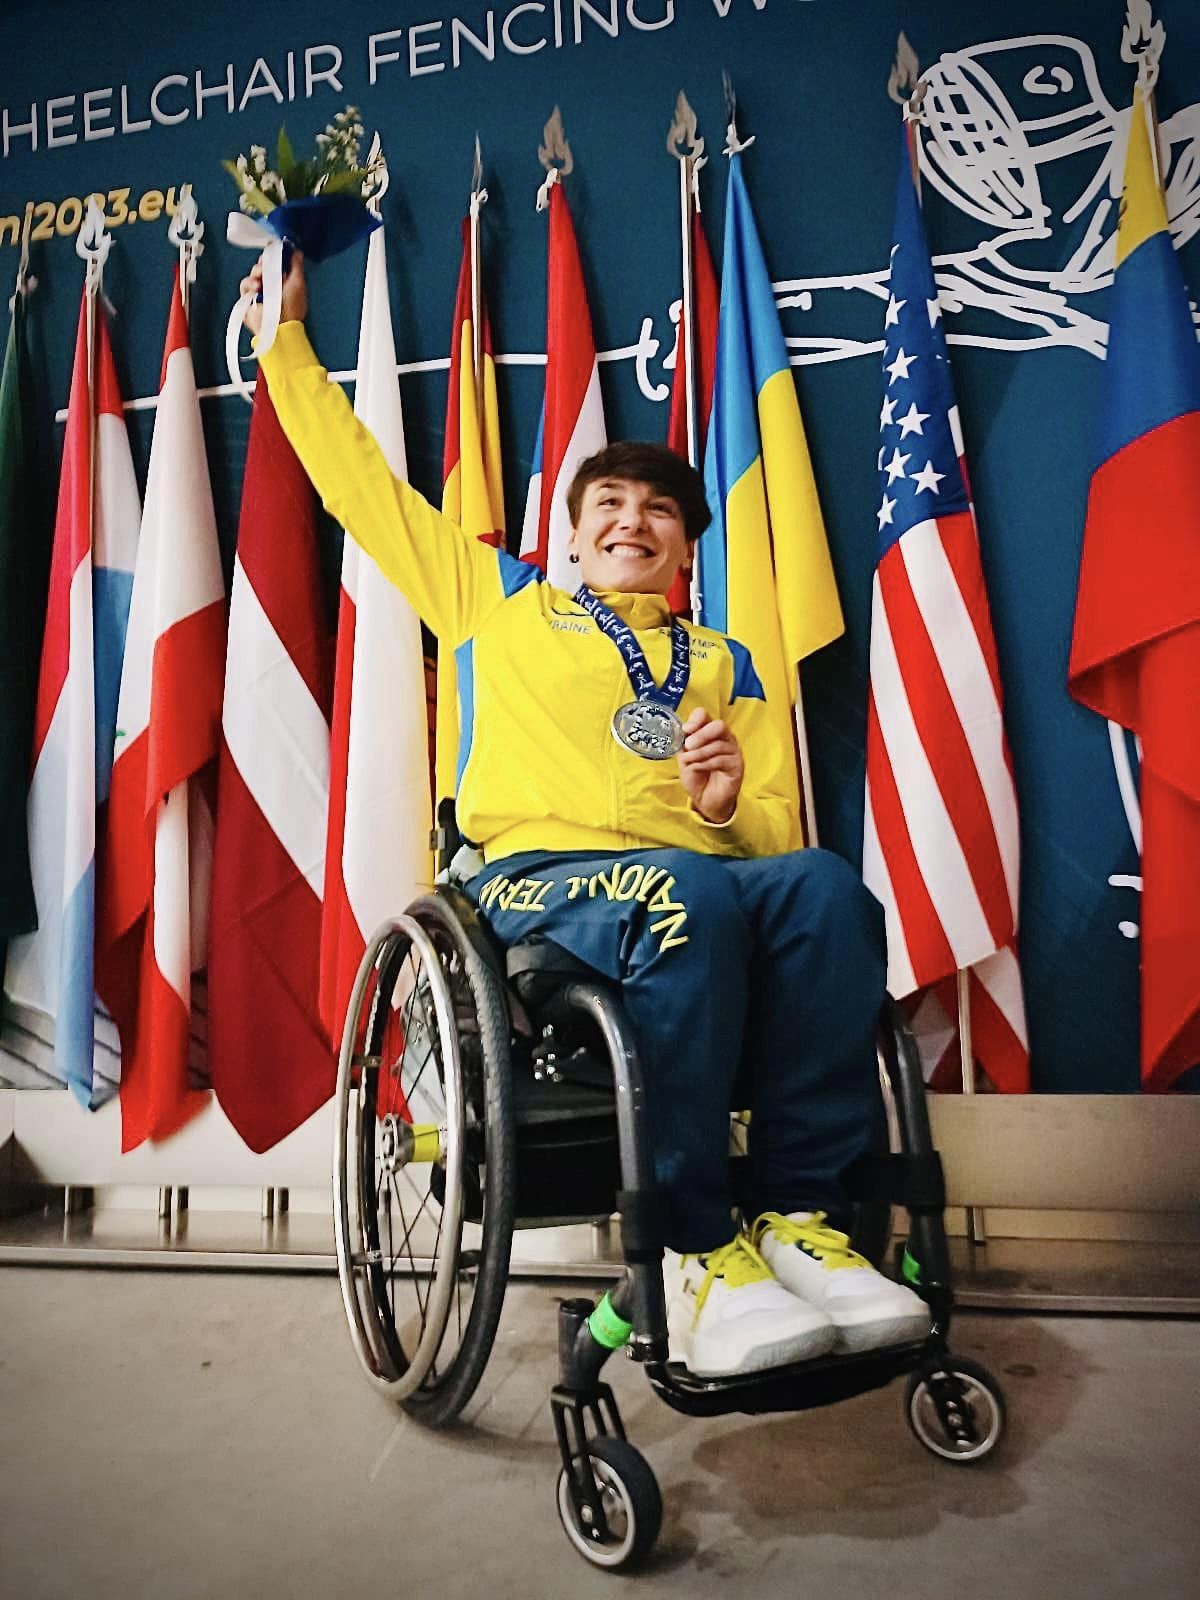 Закарпатка Надія Дьолог здобула “срібло” на  Чемпіонаті світу з фехтування на візках